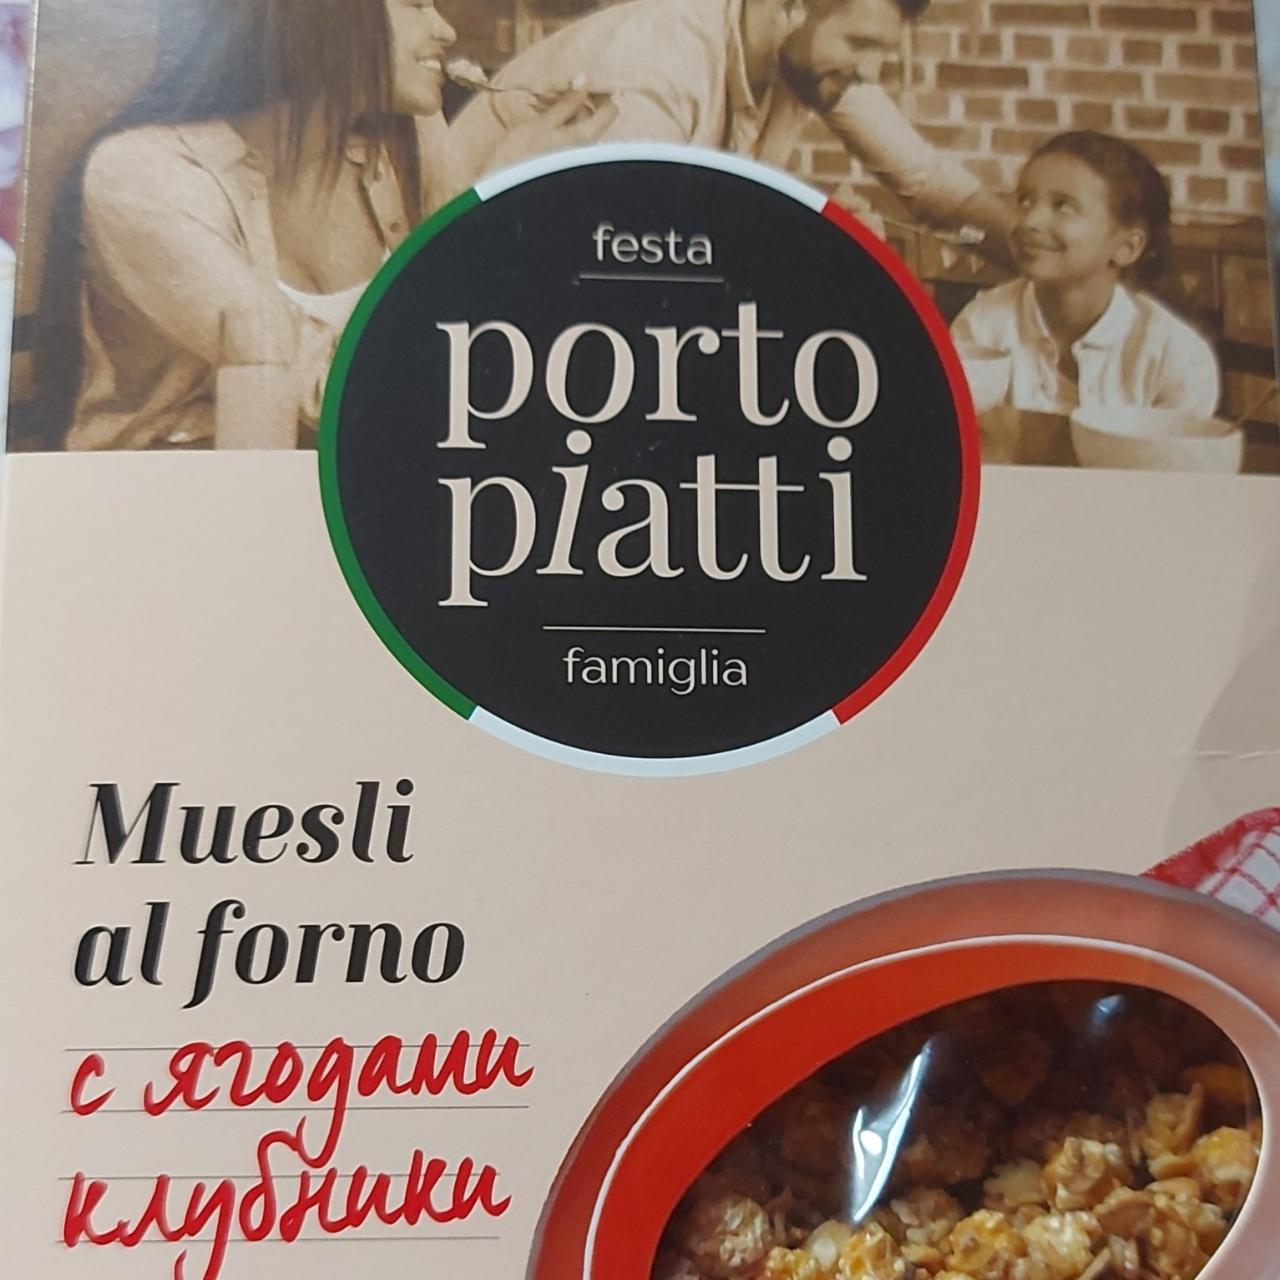 Фото - Мюсли запечённые с ягодами клубники Festa famiglia Porto piatti